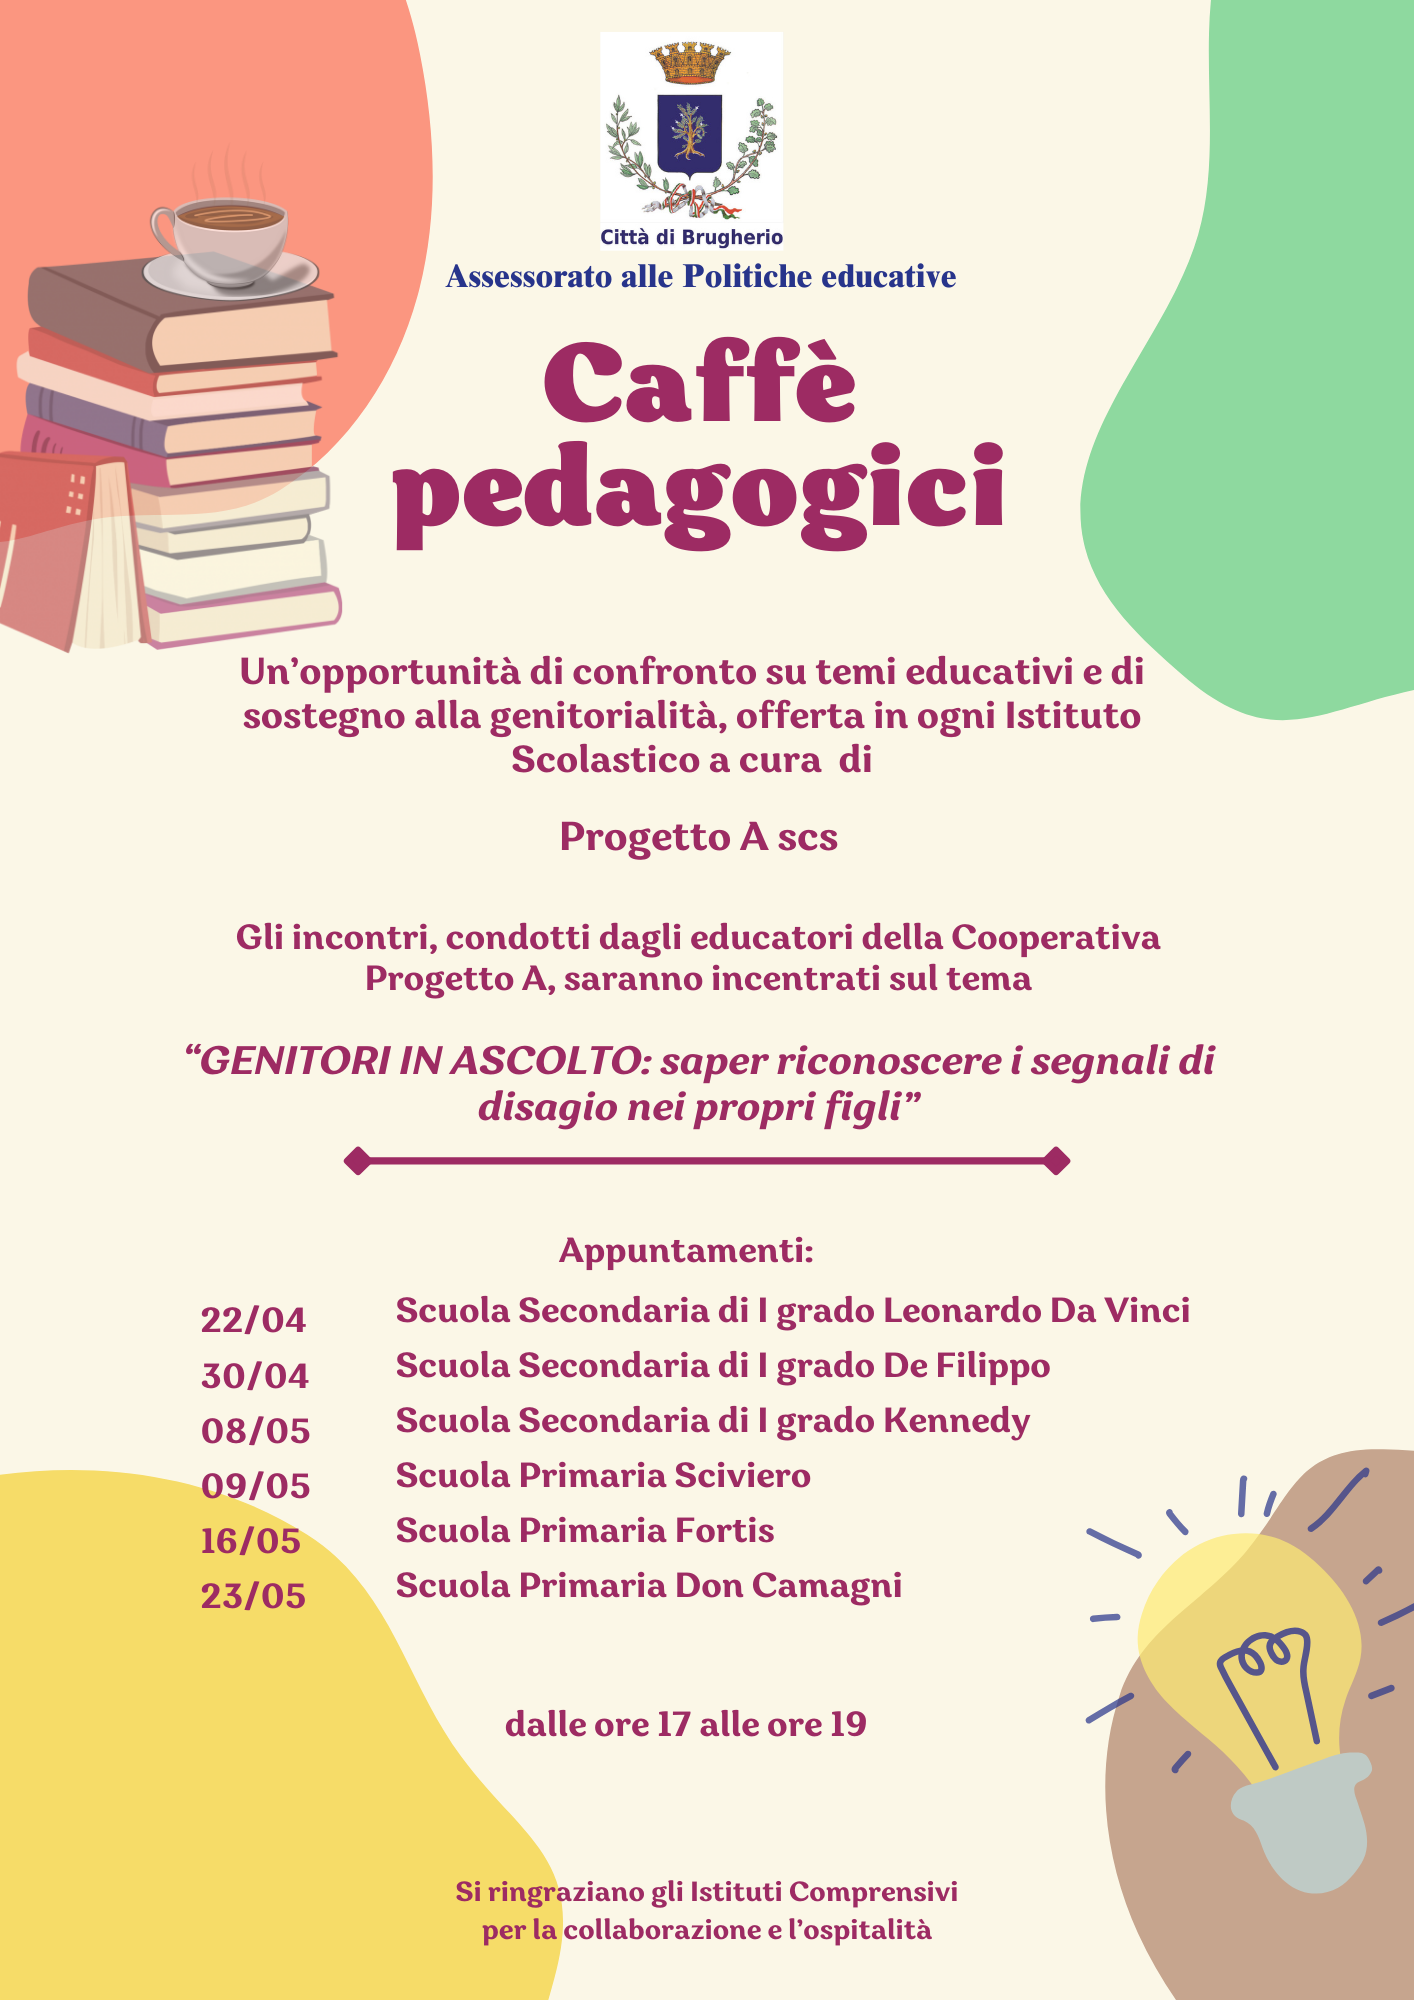 Immagine Caffè pedagogici